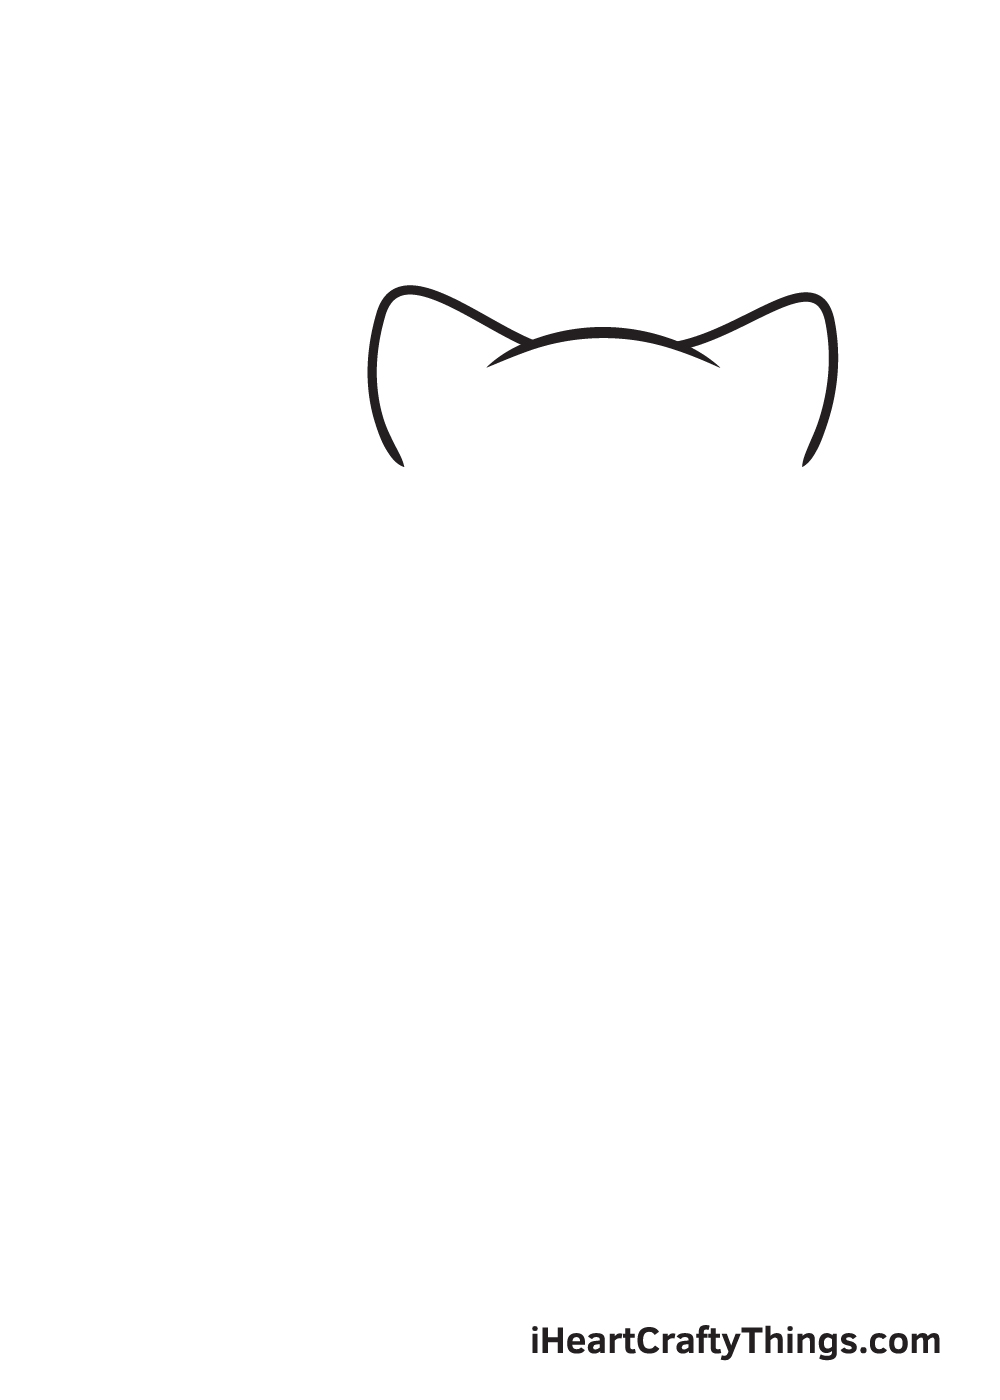 Vẽ mèo con - Bước 1